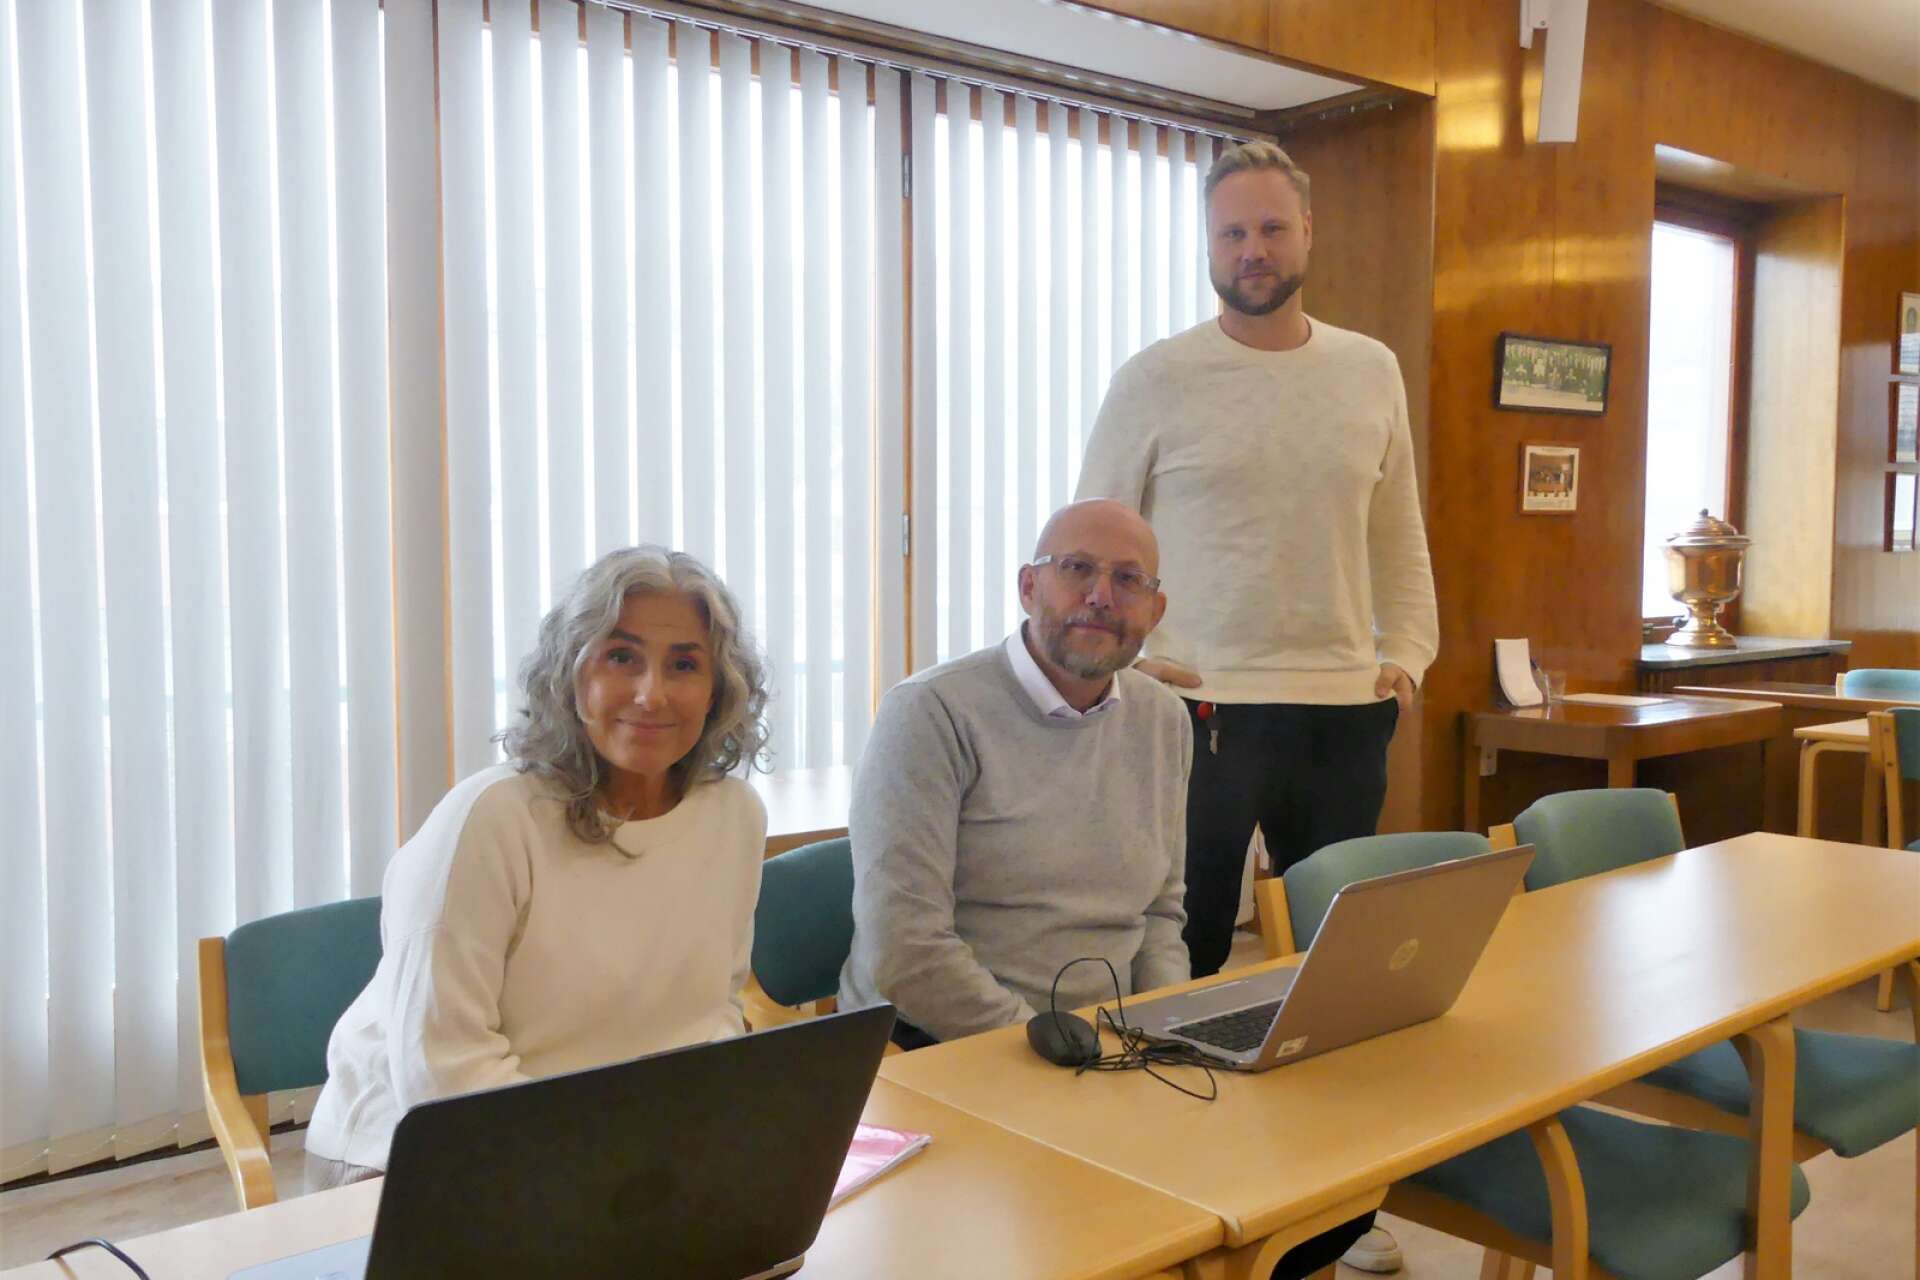 Jan-Erik Samuelssin, i mitten, tillträder formellt som kommundirektör nästa vecka. Här flankeras han av Lena Björk, folkhälsostrateg, och Kristoffer Ljung, näringslivs- och kommunikationschef.